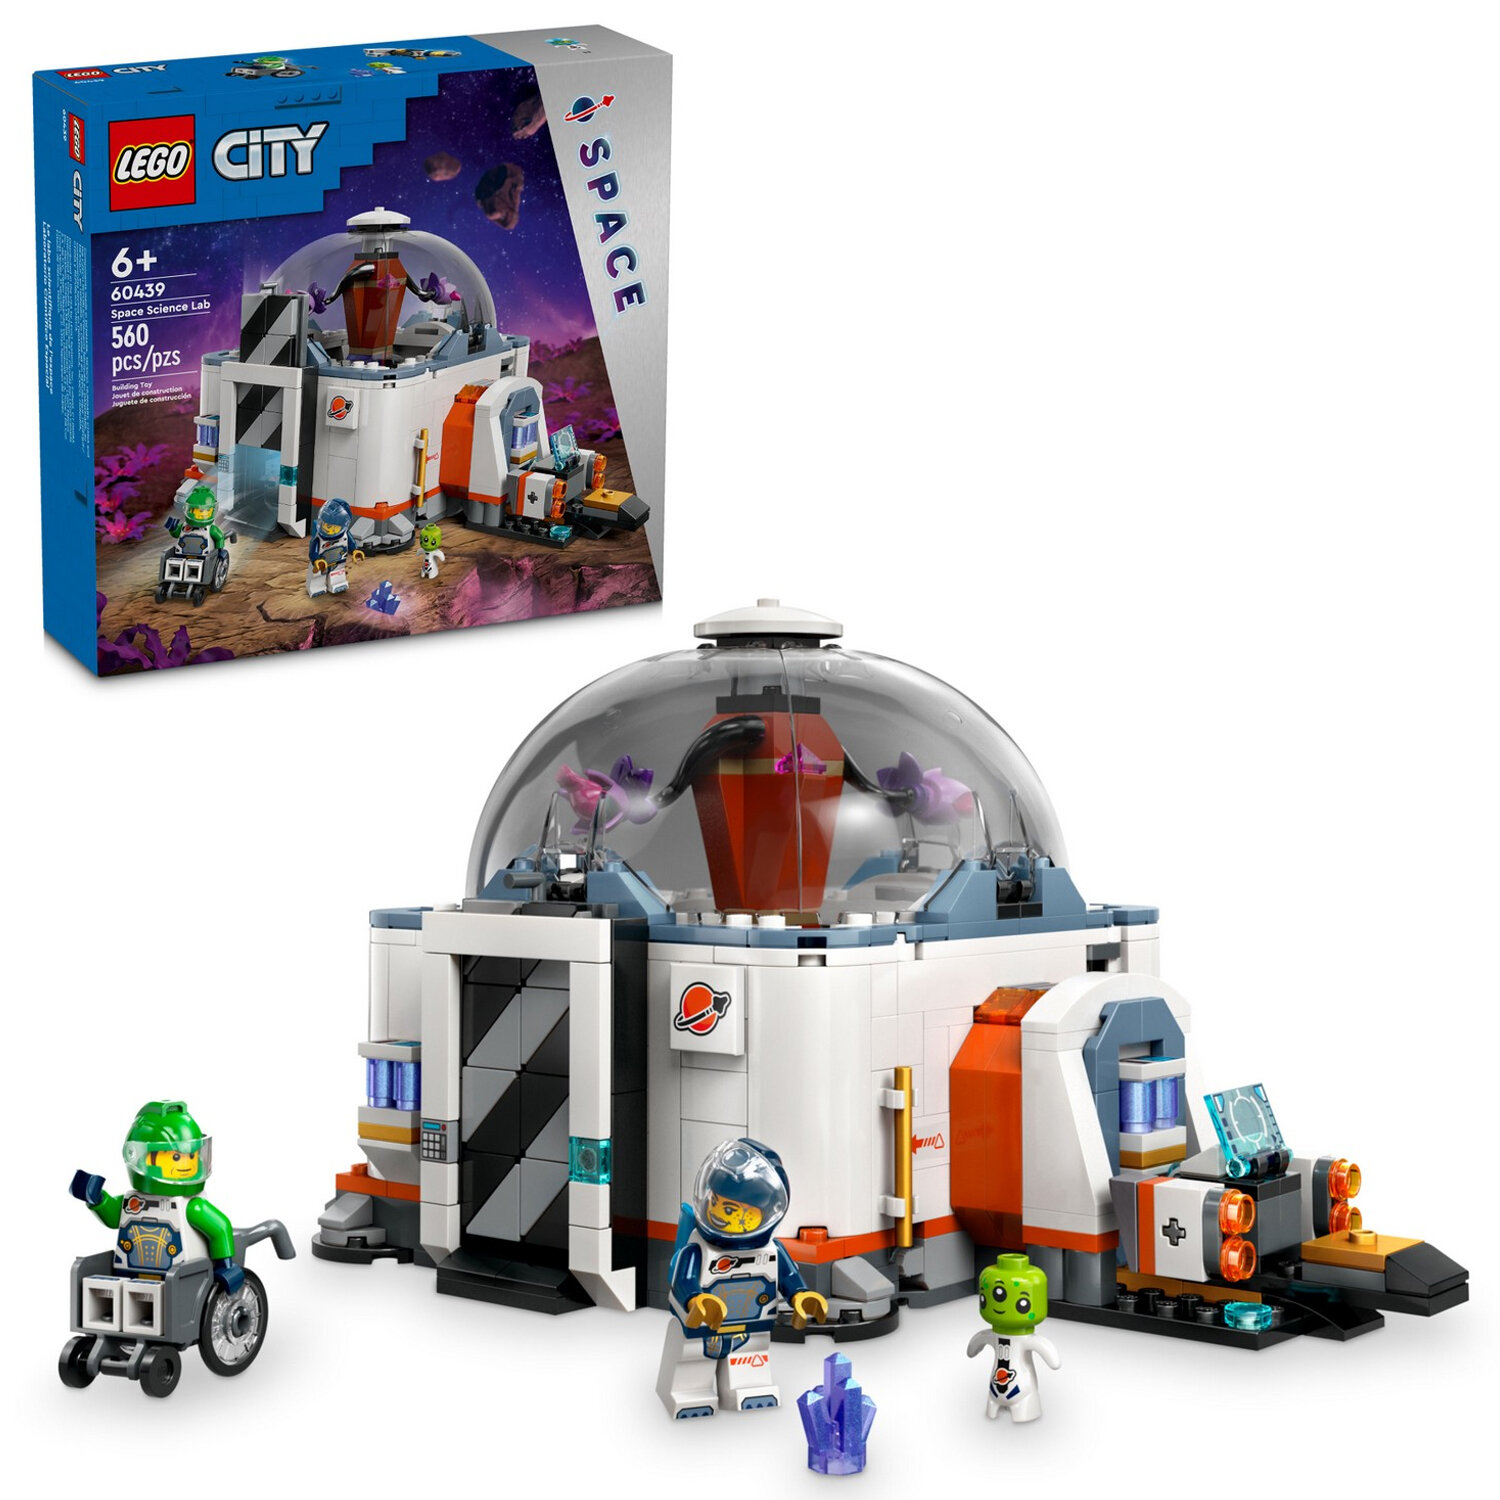 Конструктор LEGO City Космическая научная лаборатория, 560 деталей, возраст 6+